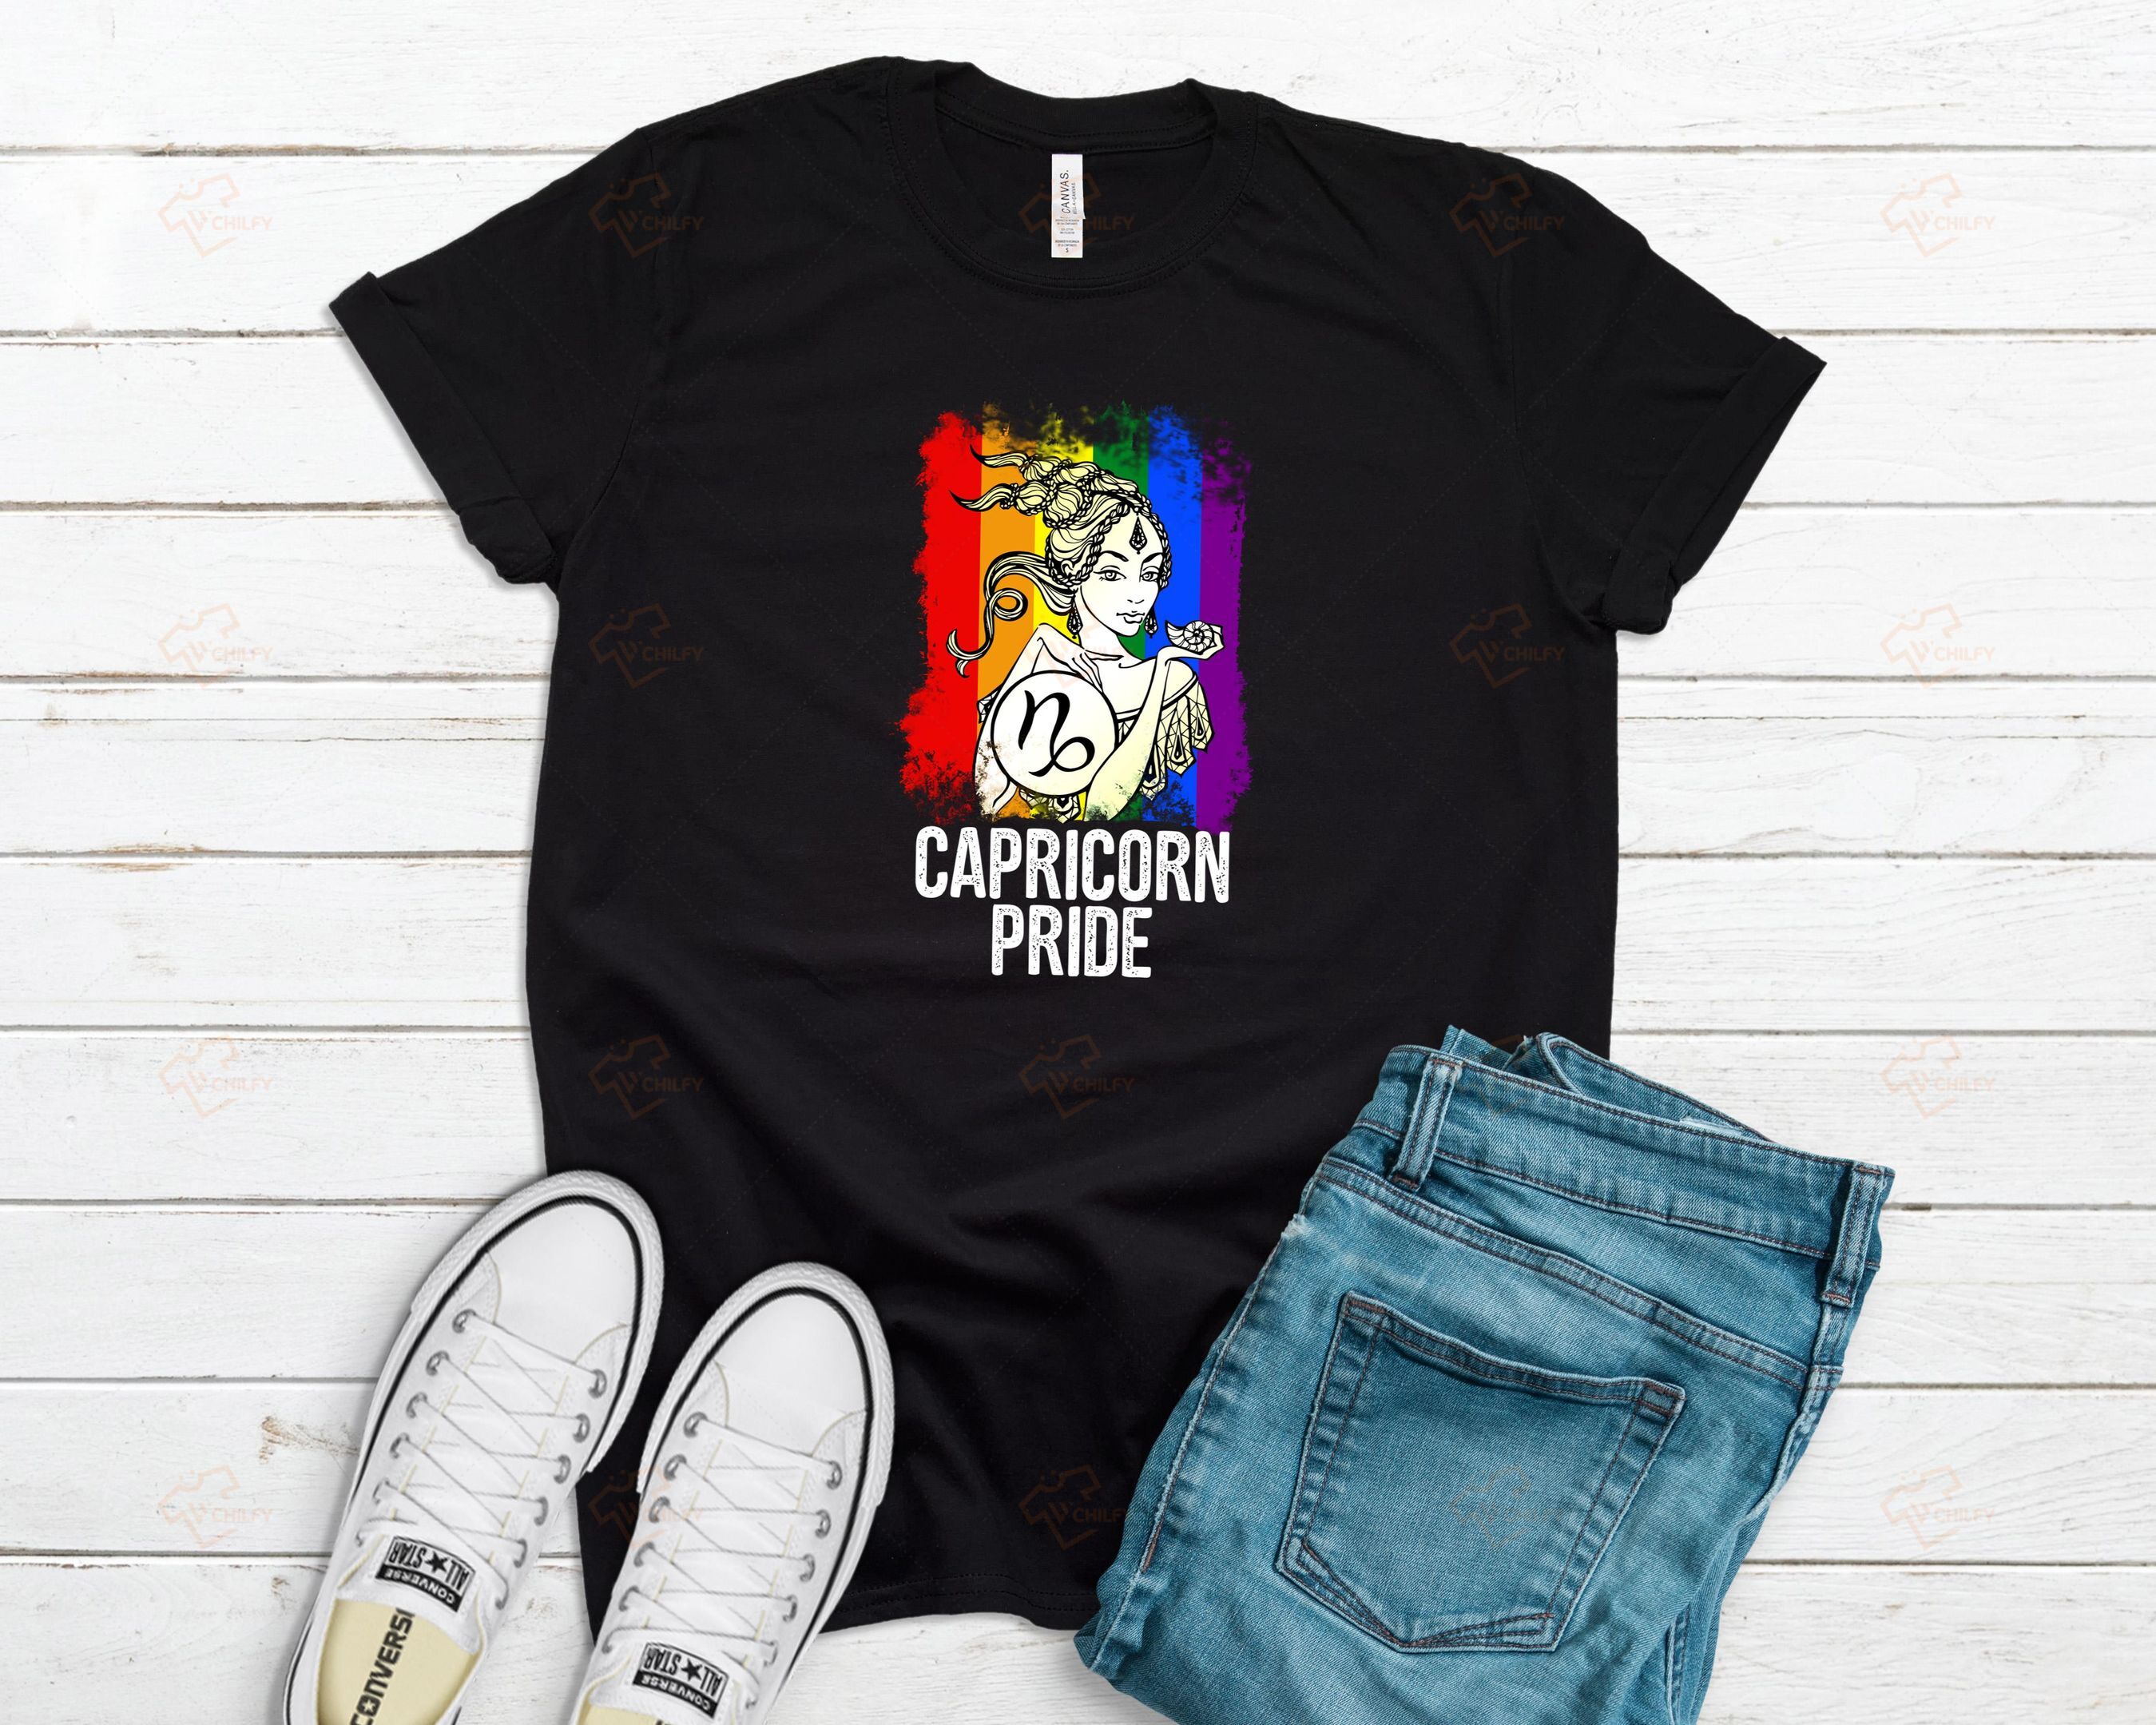 12 Signs Of The Zodiac Capricorn Shirt, Lgbt Shirt, Lgbt Pride Shirt, Lgbt Queer, Lgbt Zodiac Shirt